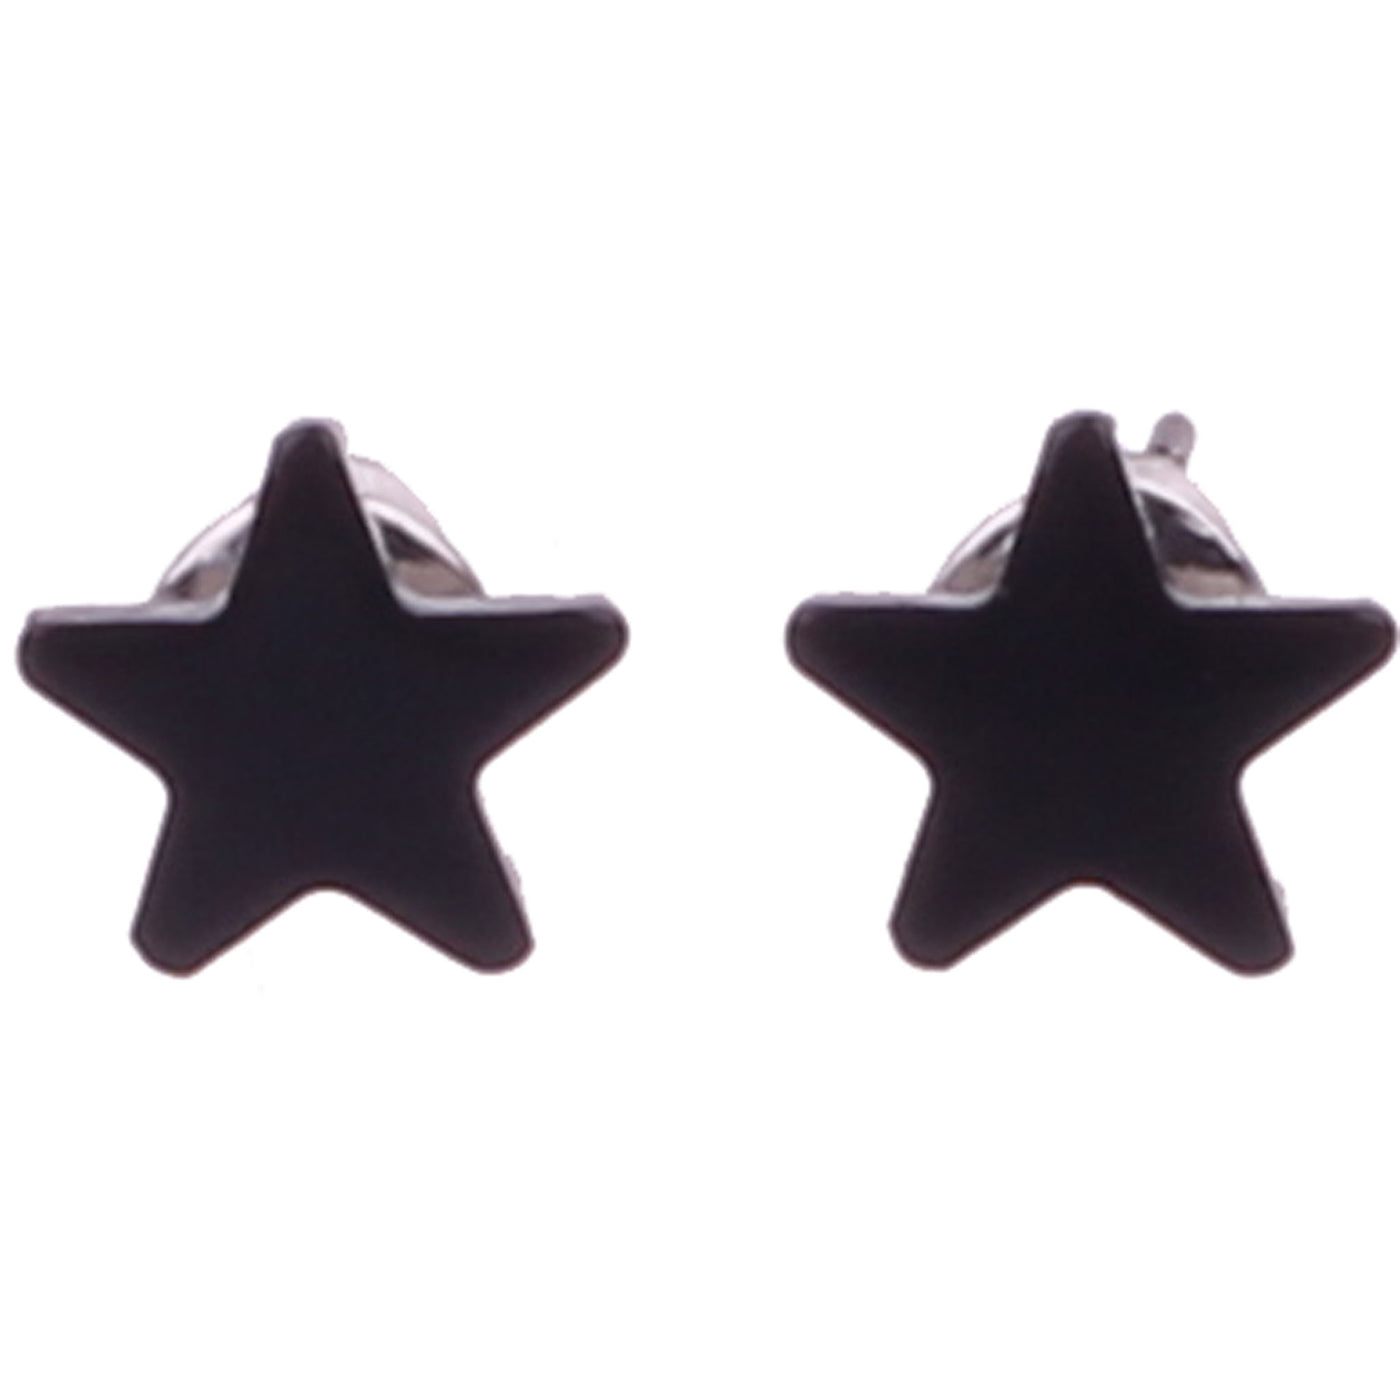 Star earrings 5mm